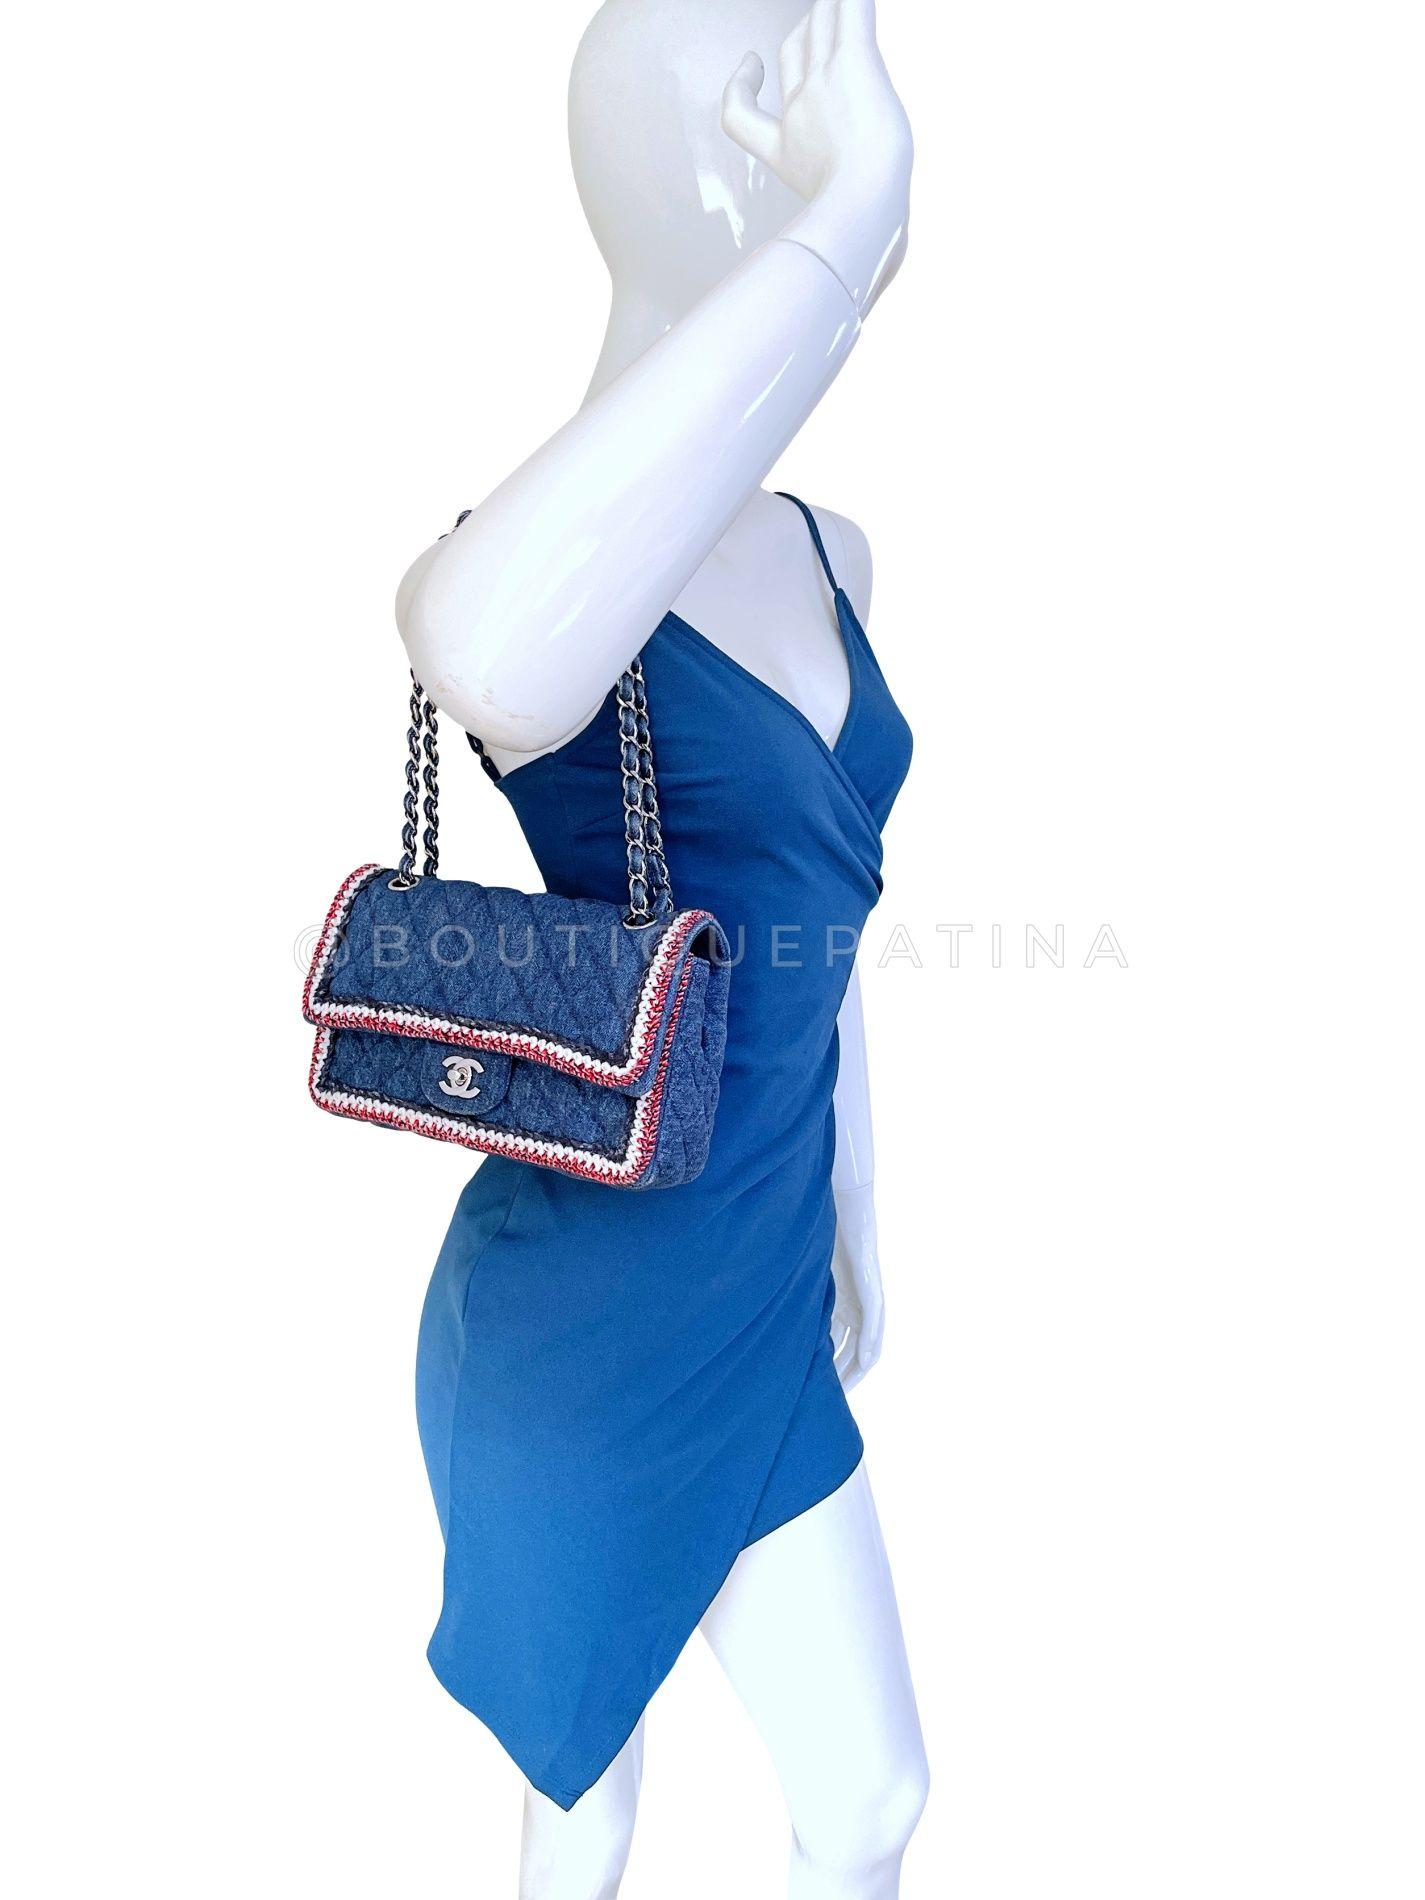 Chanel 2018 Framed Denim Medium Classic Flap Bag SHW 67966 For Sale 10